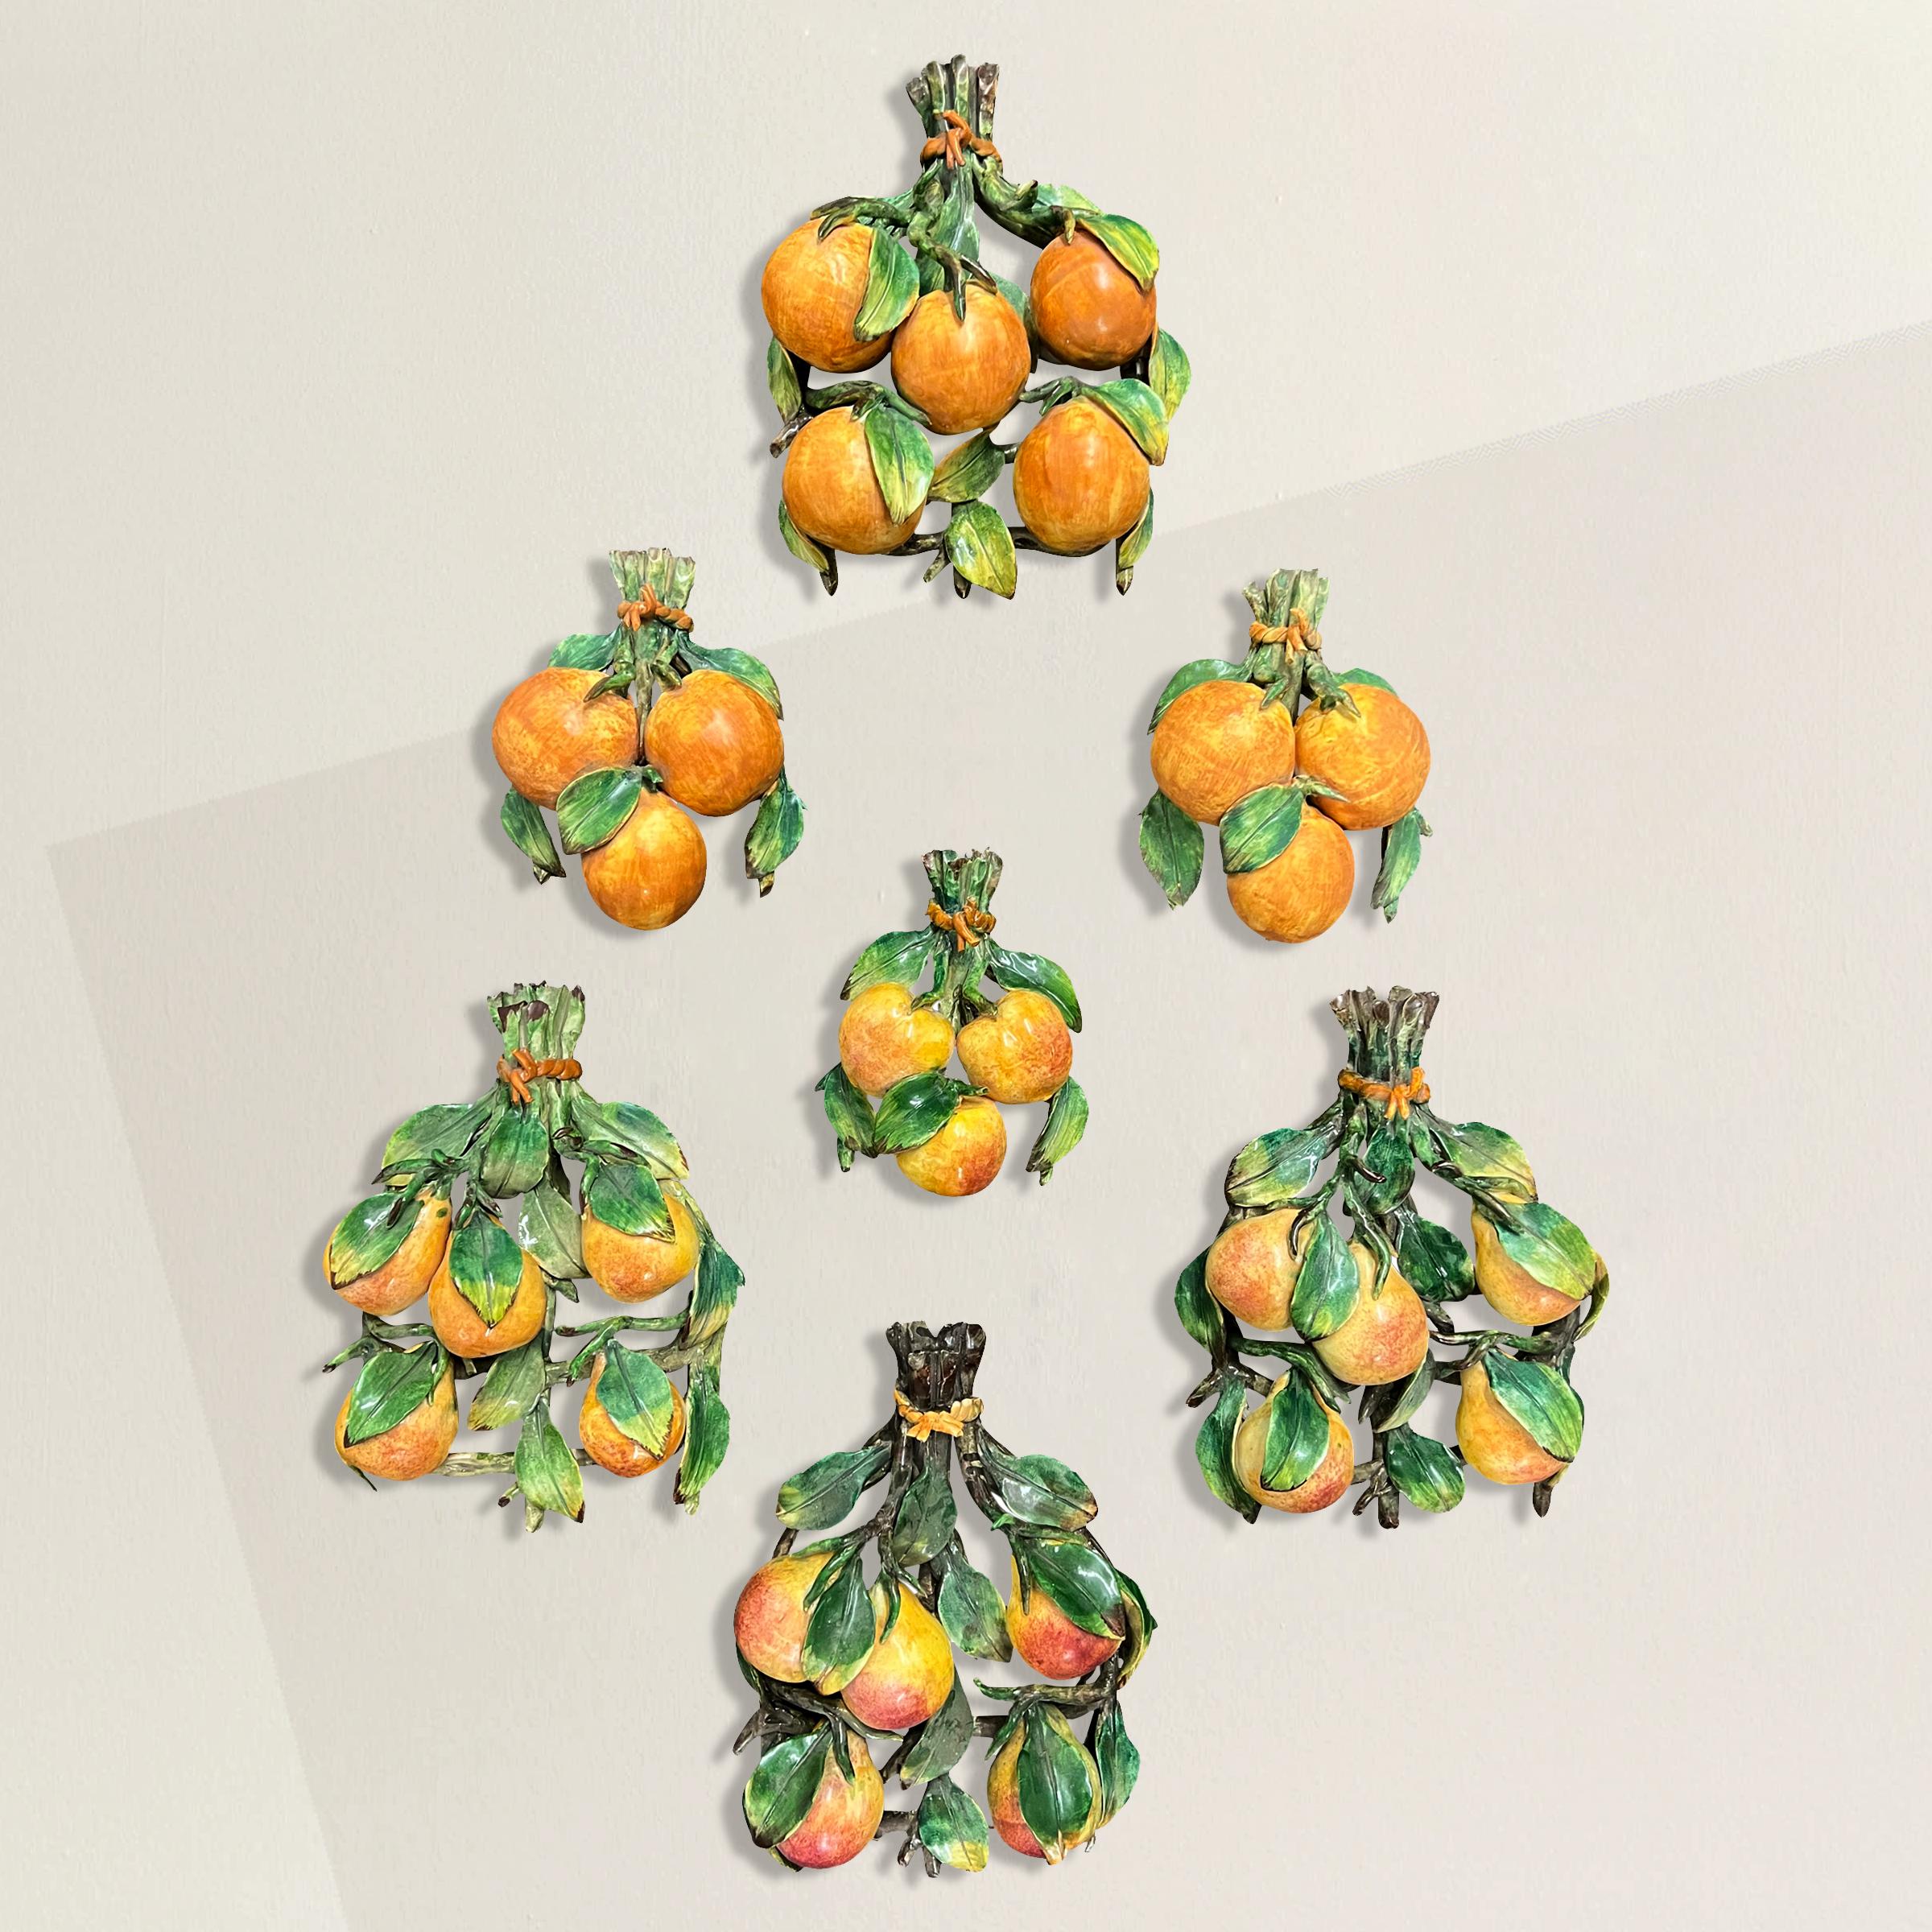 Une collection merveilleusement fantaisiste de fruits en porcelaine italienne vintage Capodimonte peints à la main, dont des oranges, des poires et des pommes, parfaits pour être suspendus dans une myriade de compositions dans la cuisine de votre